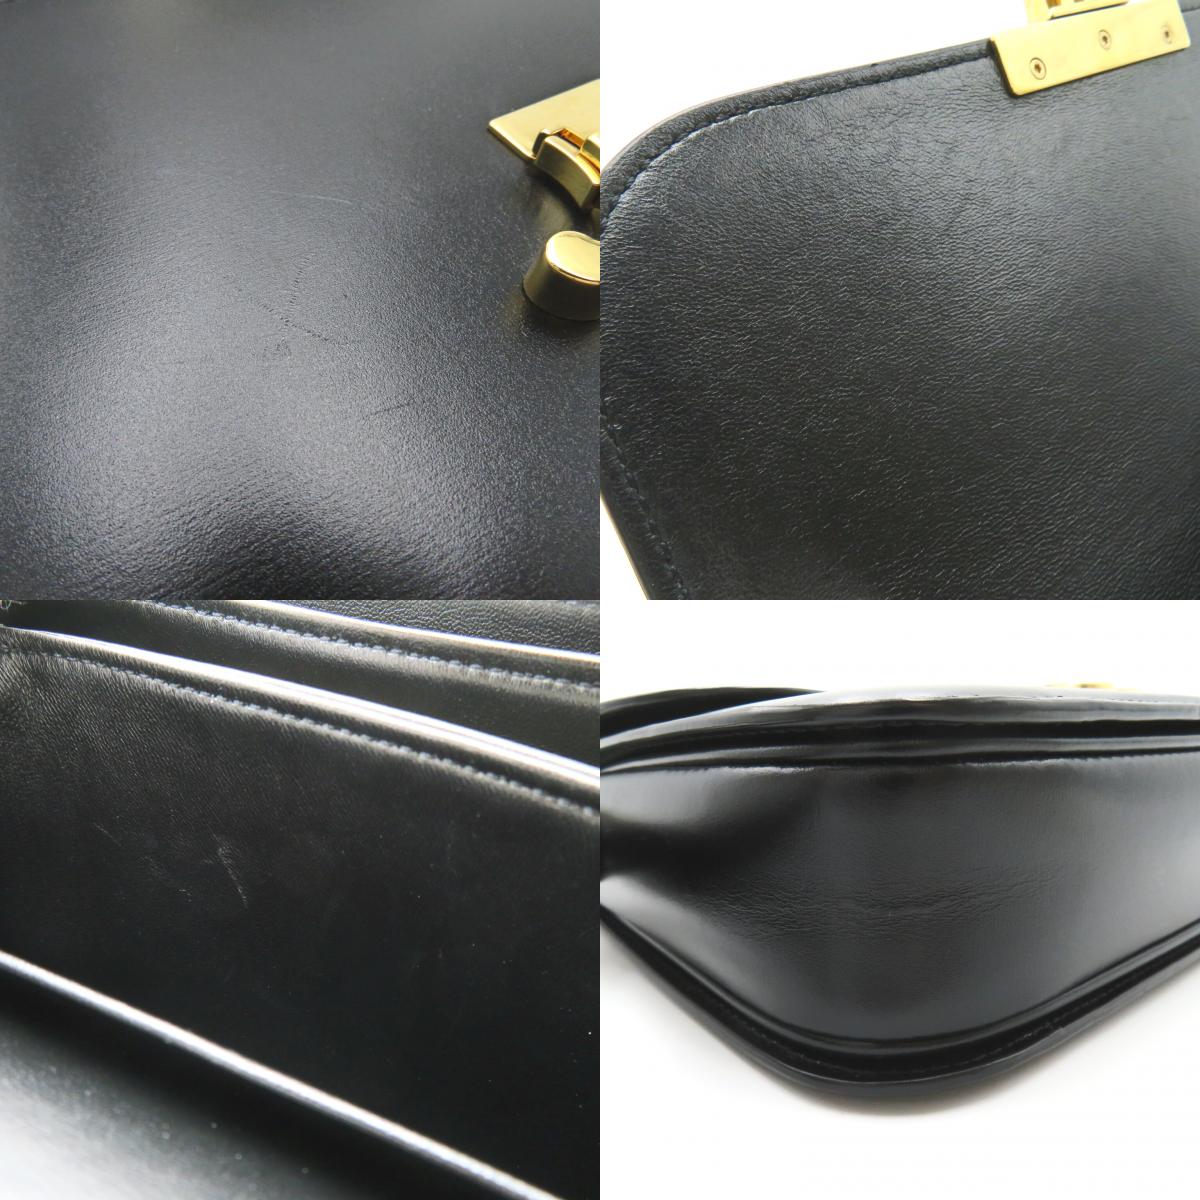 Celine  Humidious Shoulder Bag Shoulder Bag  Black 187363